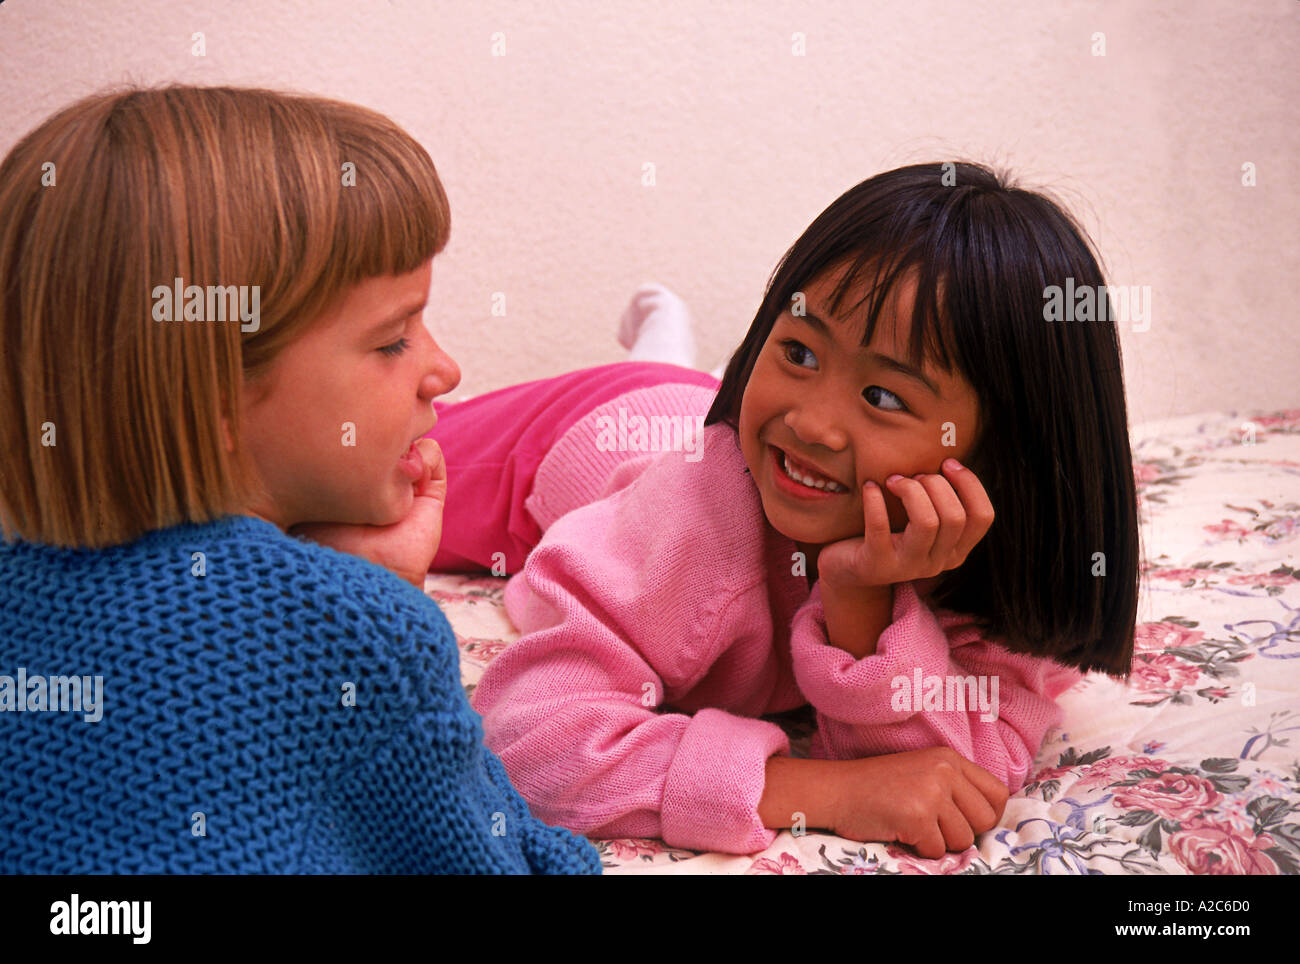 Horizontalen Schuss von zwei jungen Mädchen 5-7 Jahre alt mit auf Bett sprechen Converse Kalifornien USA Herr © Myrleen Pearson Stockfoto